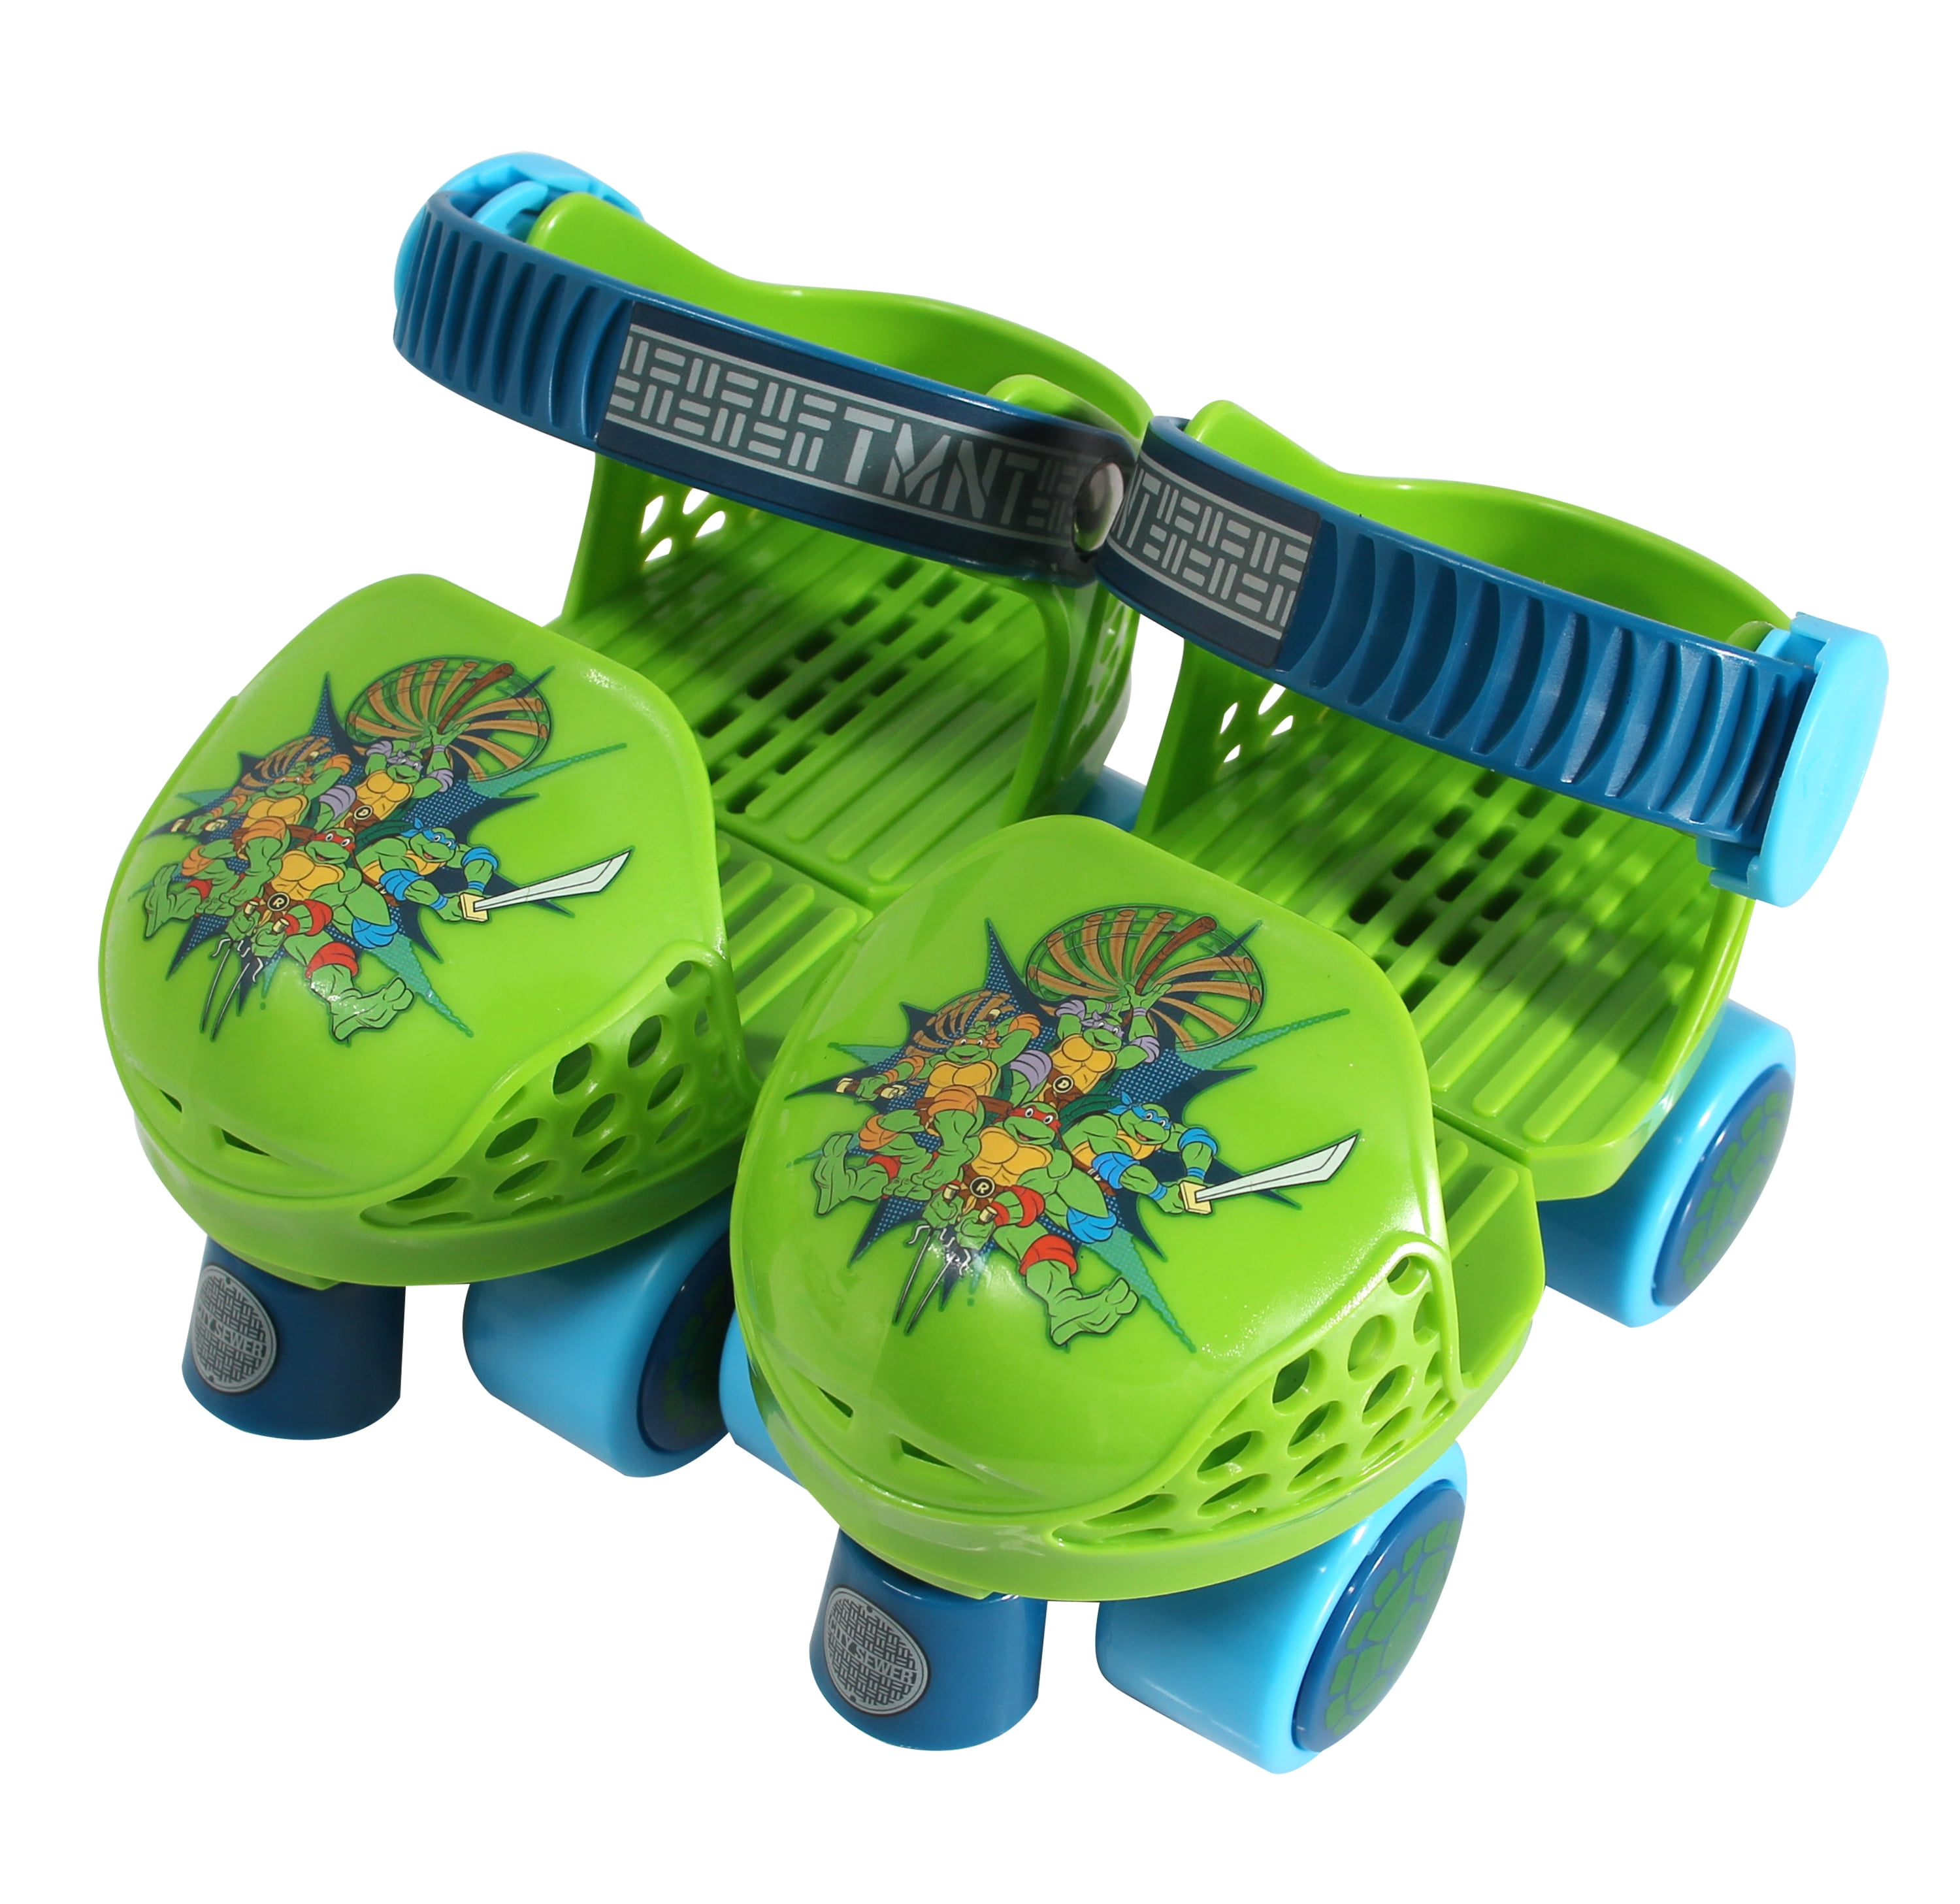 PlayWheels Teenage Mutant Ninja Turtles Roller Skates with Knee Pads and Helmet Junior Size 6-12